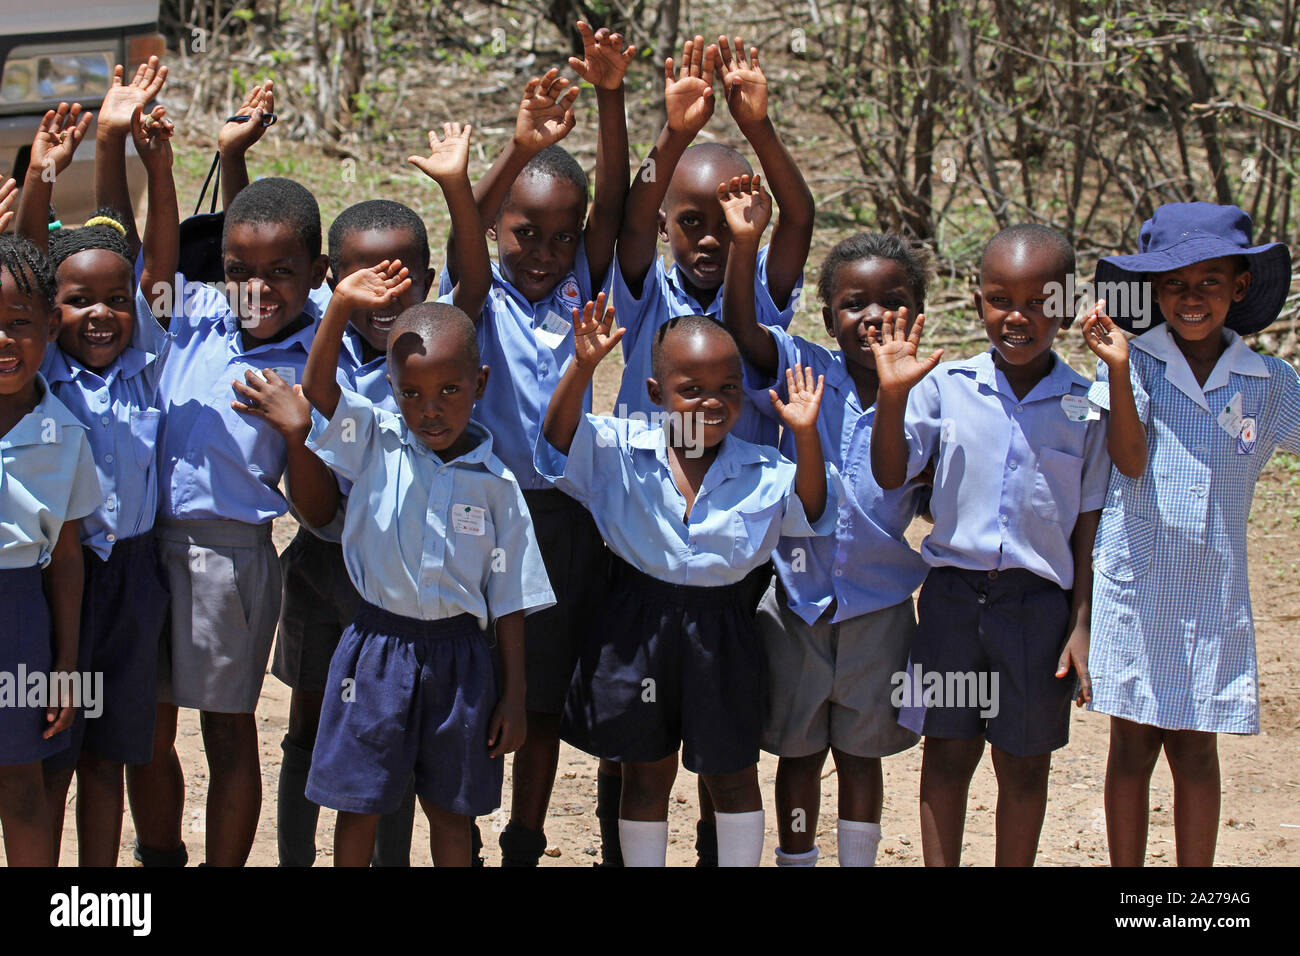 School children in uniform, Zimbabwe. Stock Photo